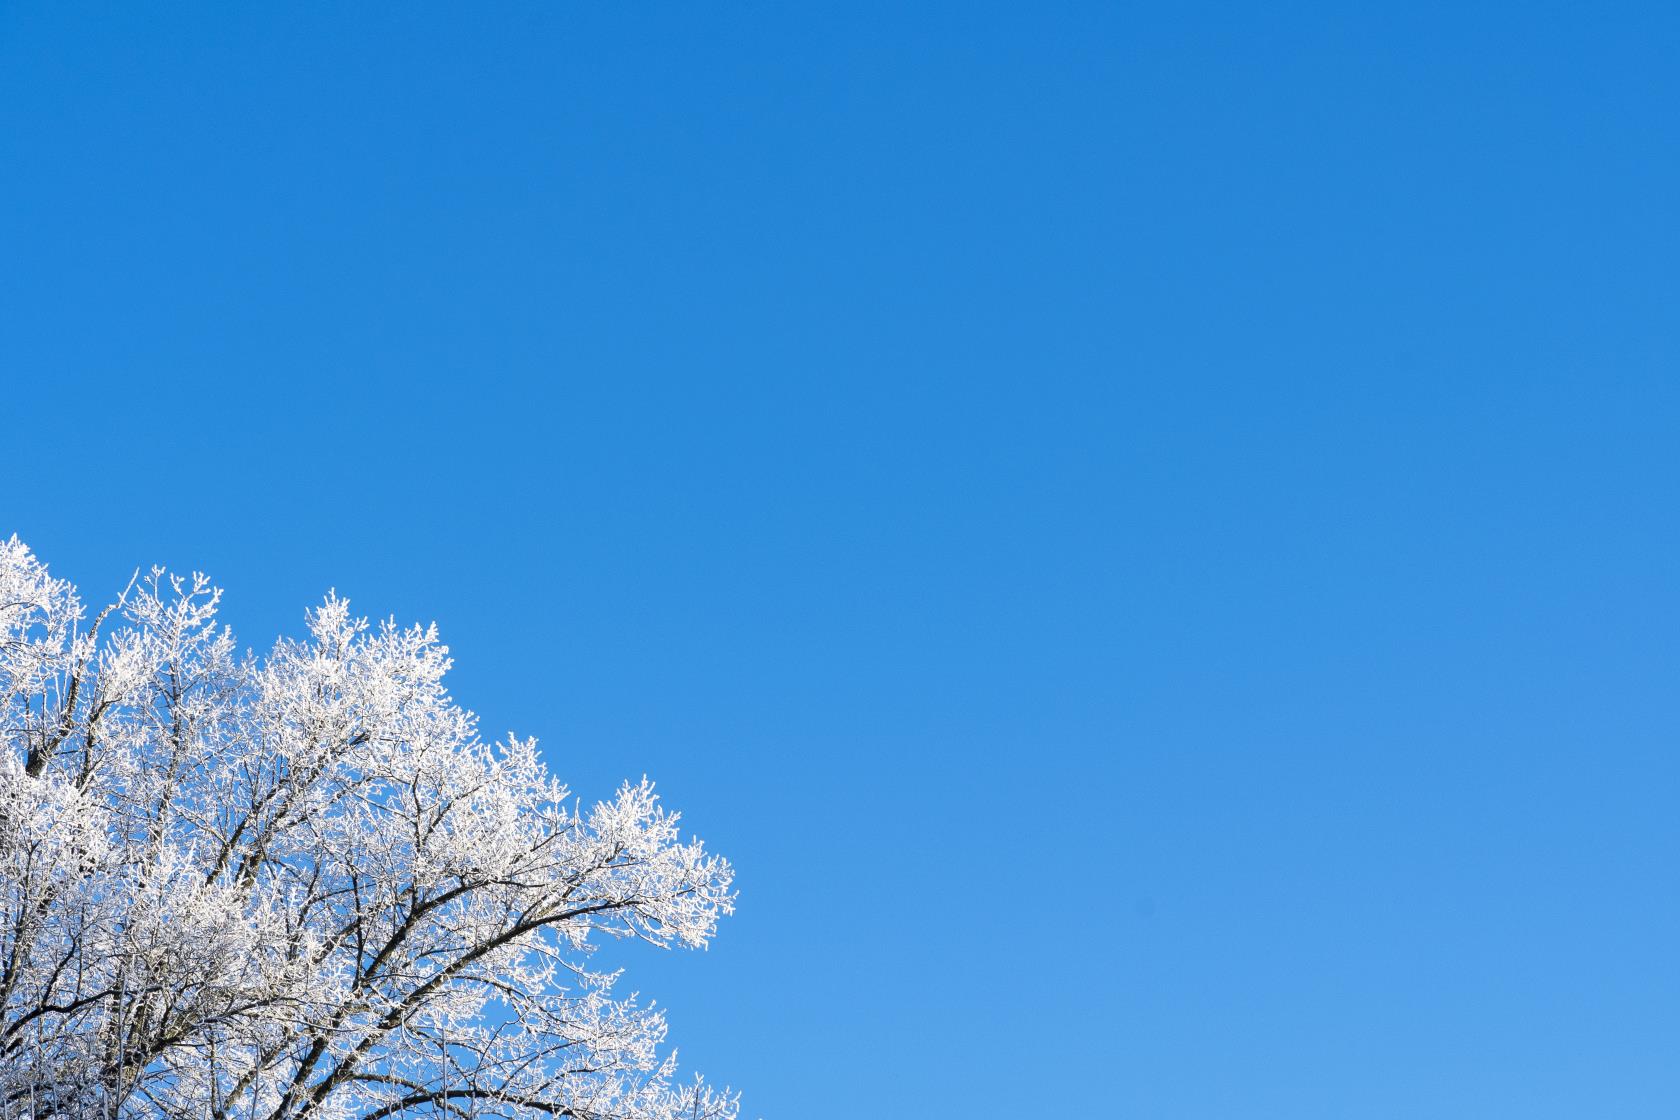 En frostig trädkrona mot blå himmel.